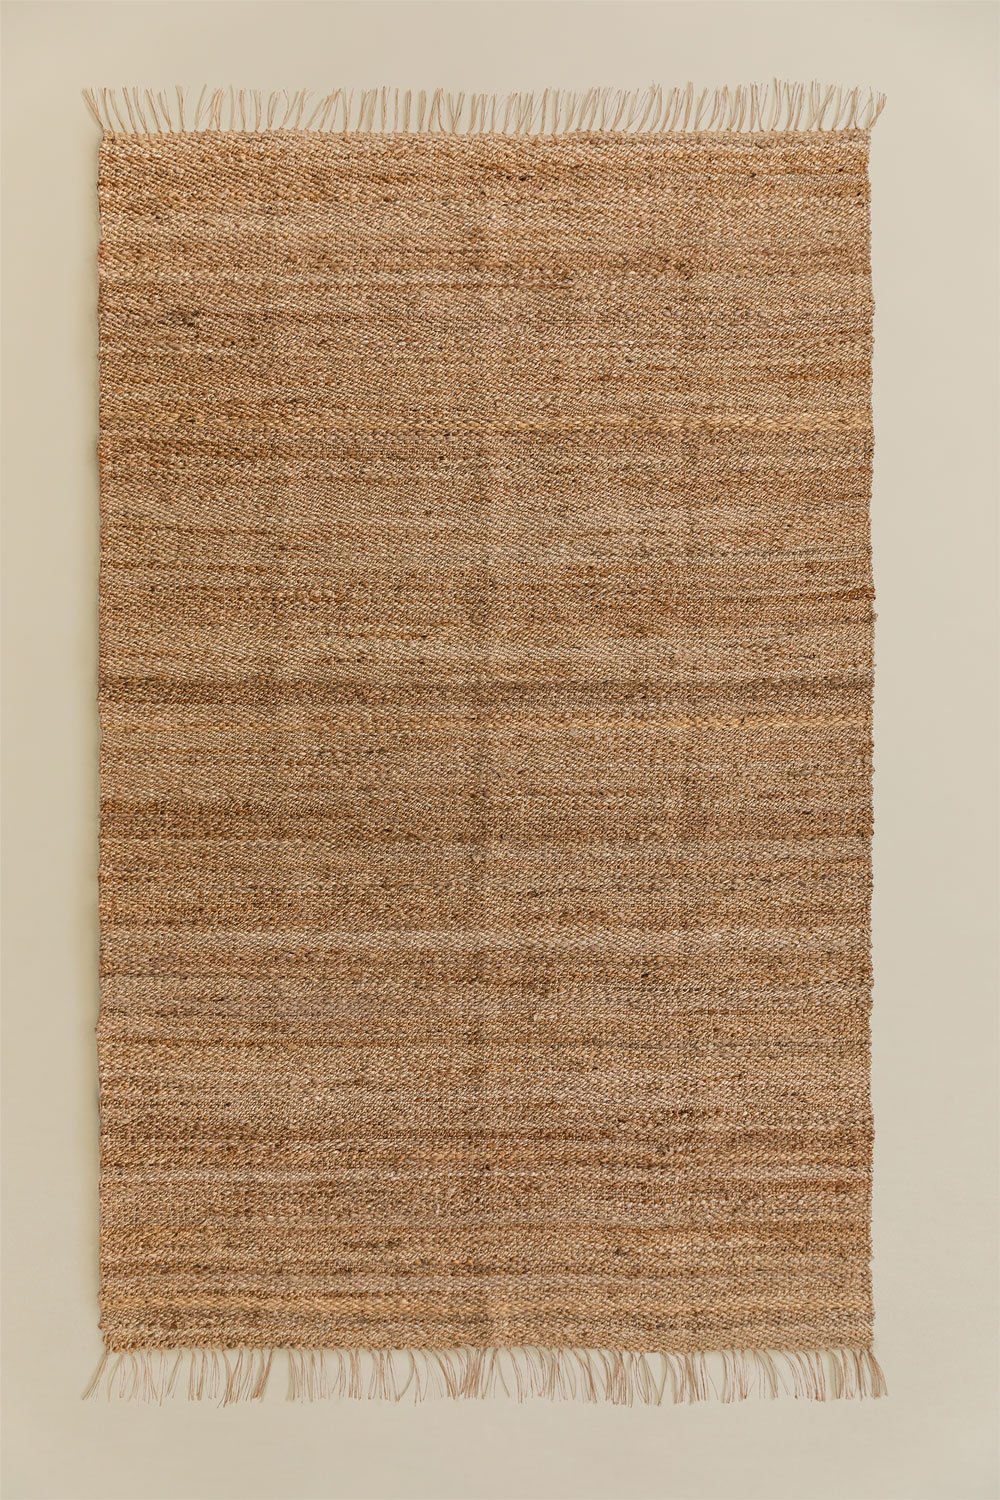 Vloerkleed naturel jute (275x155 cm) Magot, galerij beeld 1